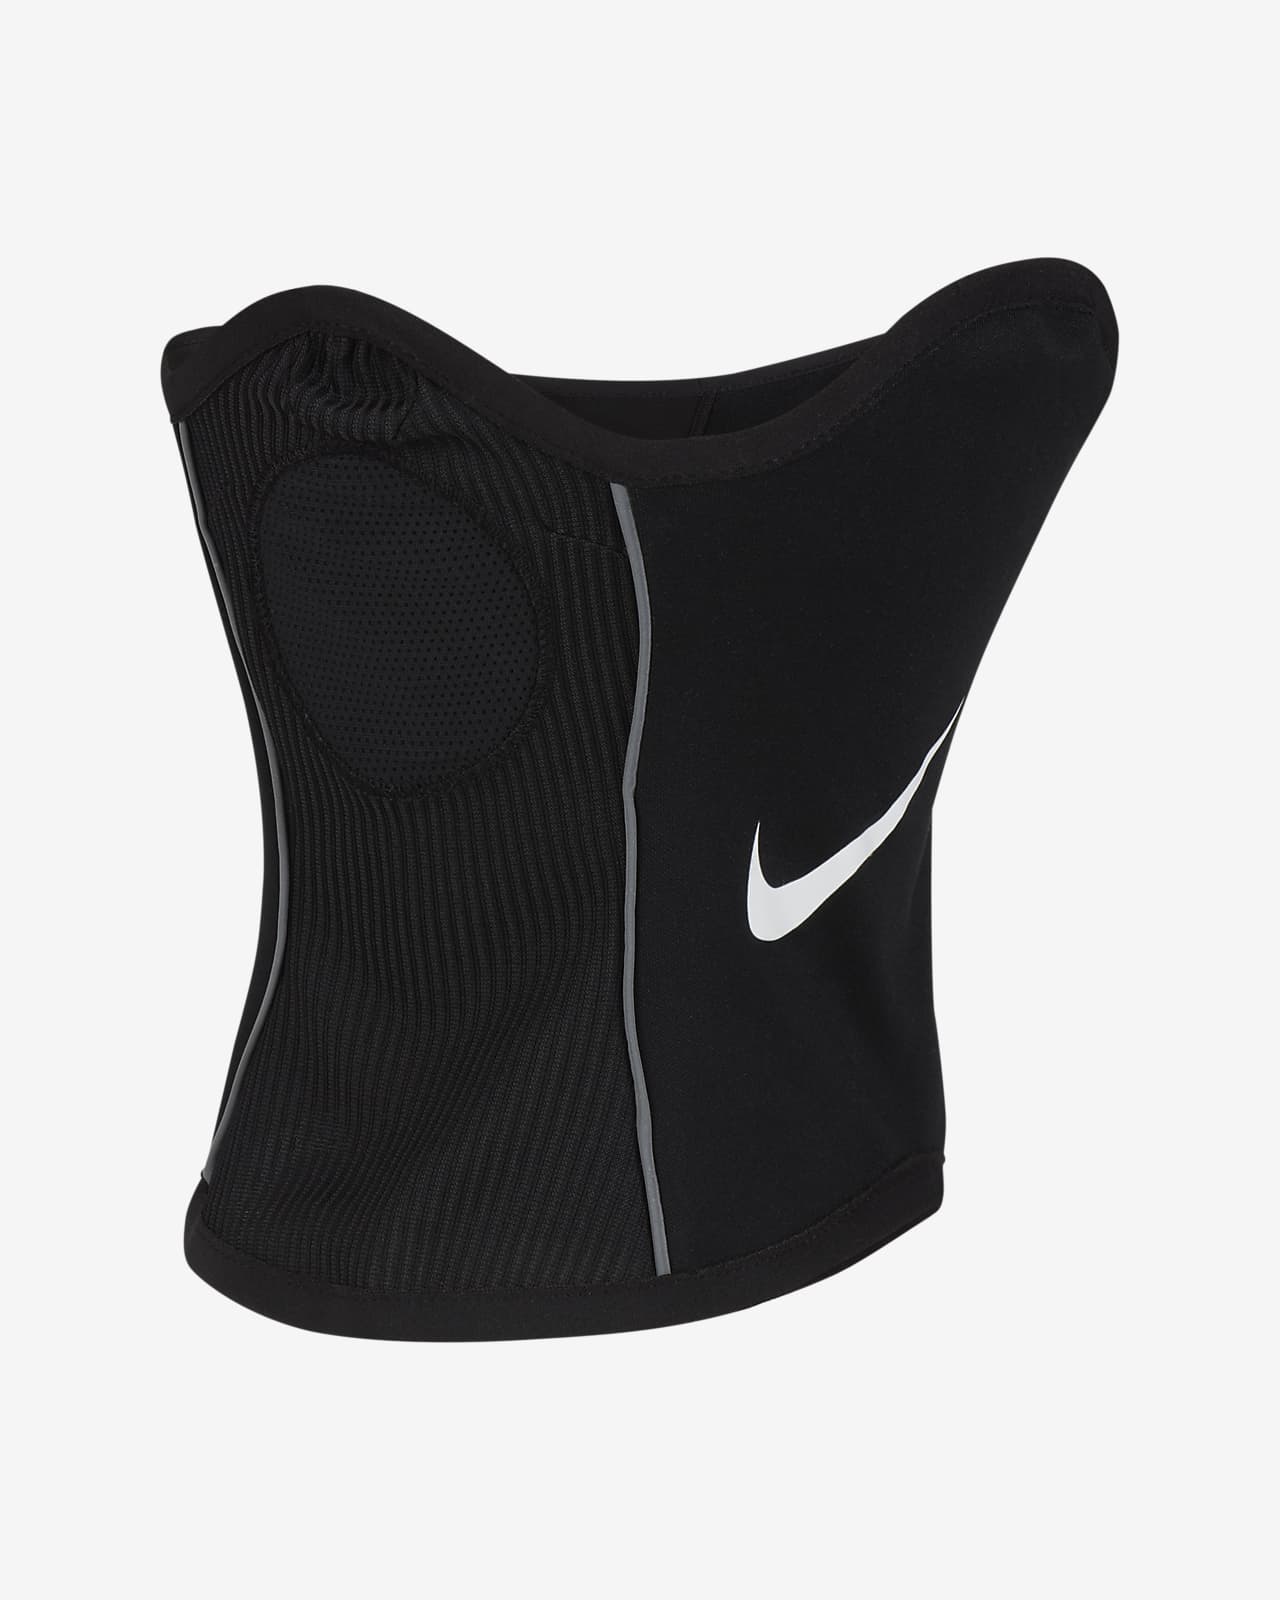 Ανδρικό κάλυμμα λαιμού για ποδόσφαιρο Dri-FIT Nike Winter Warrior